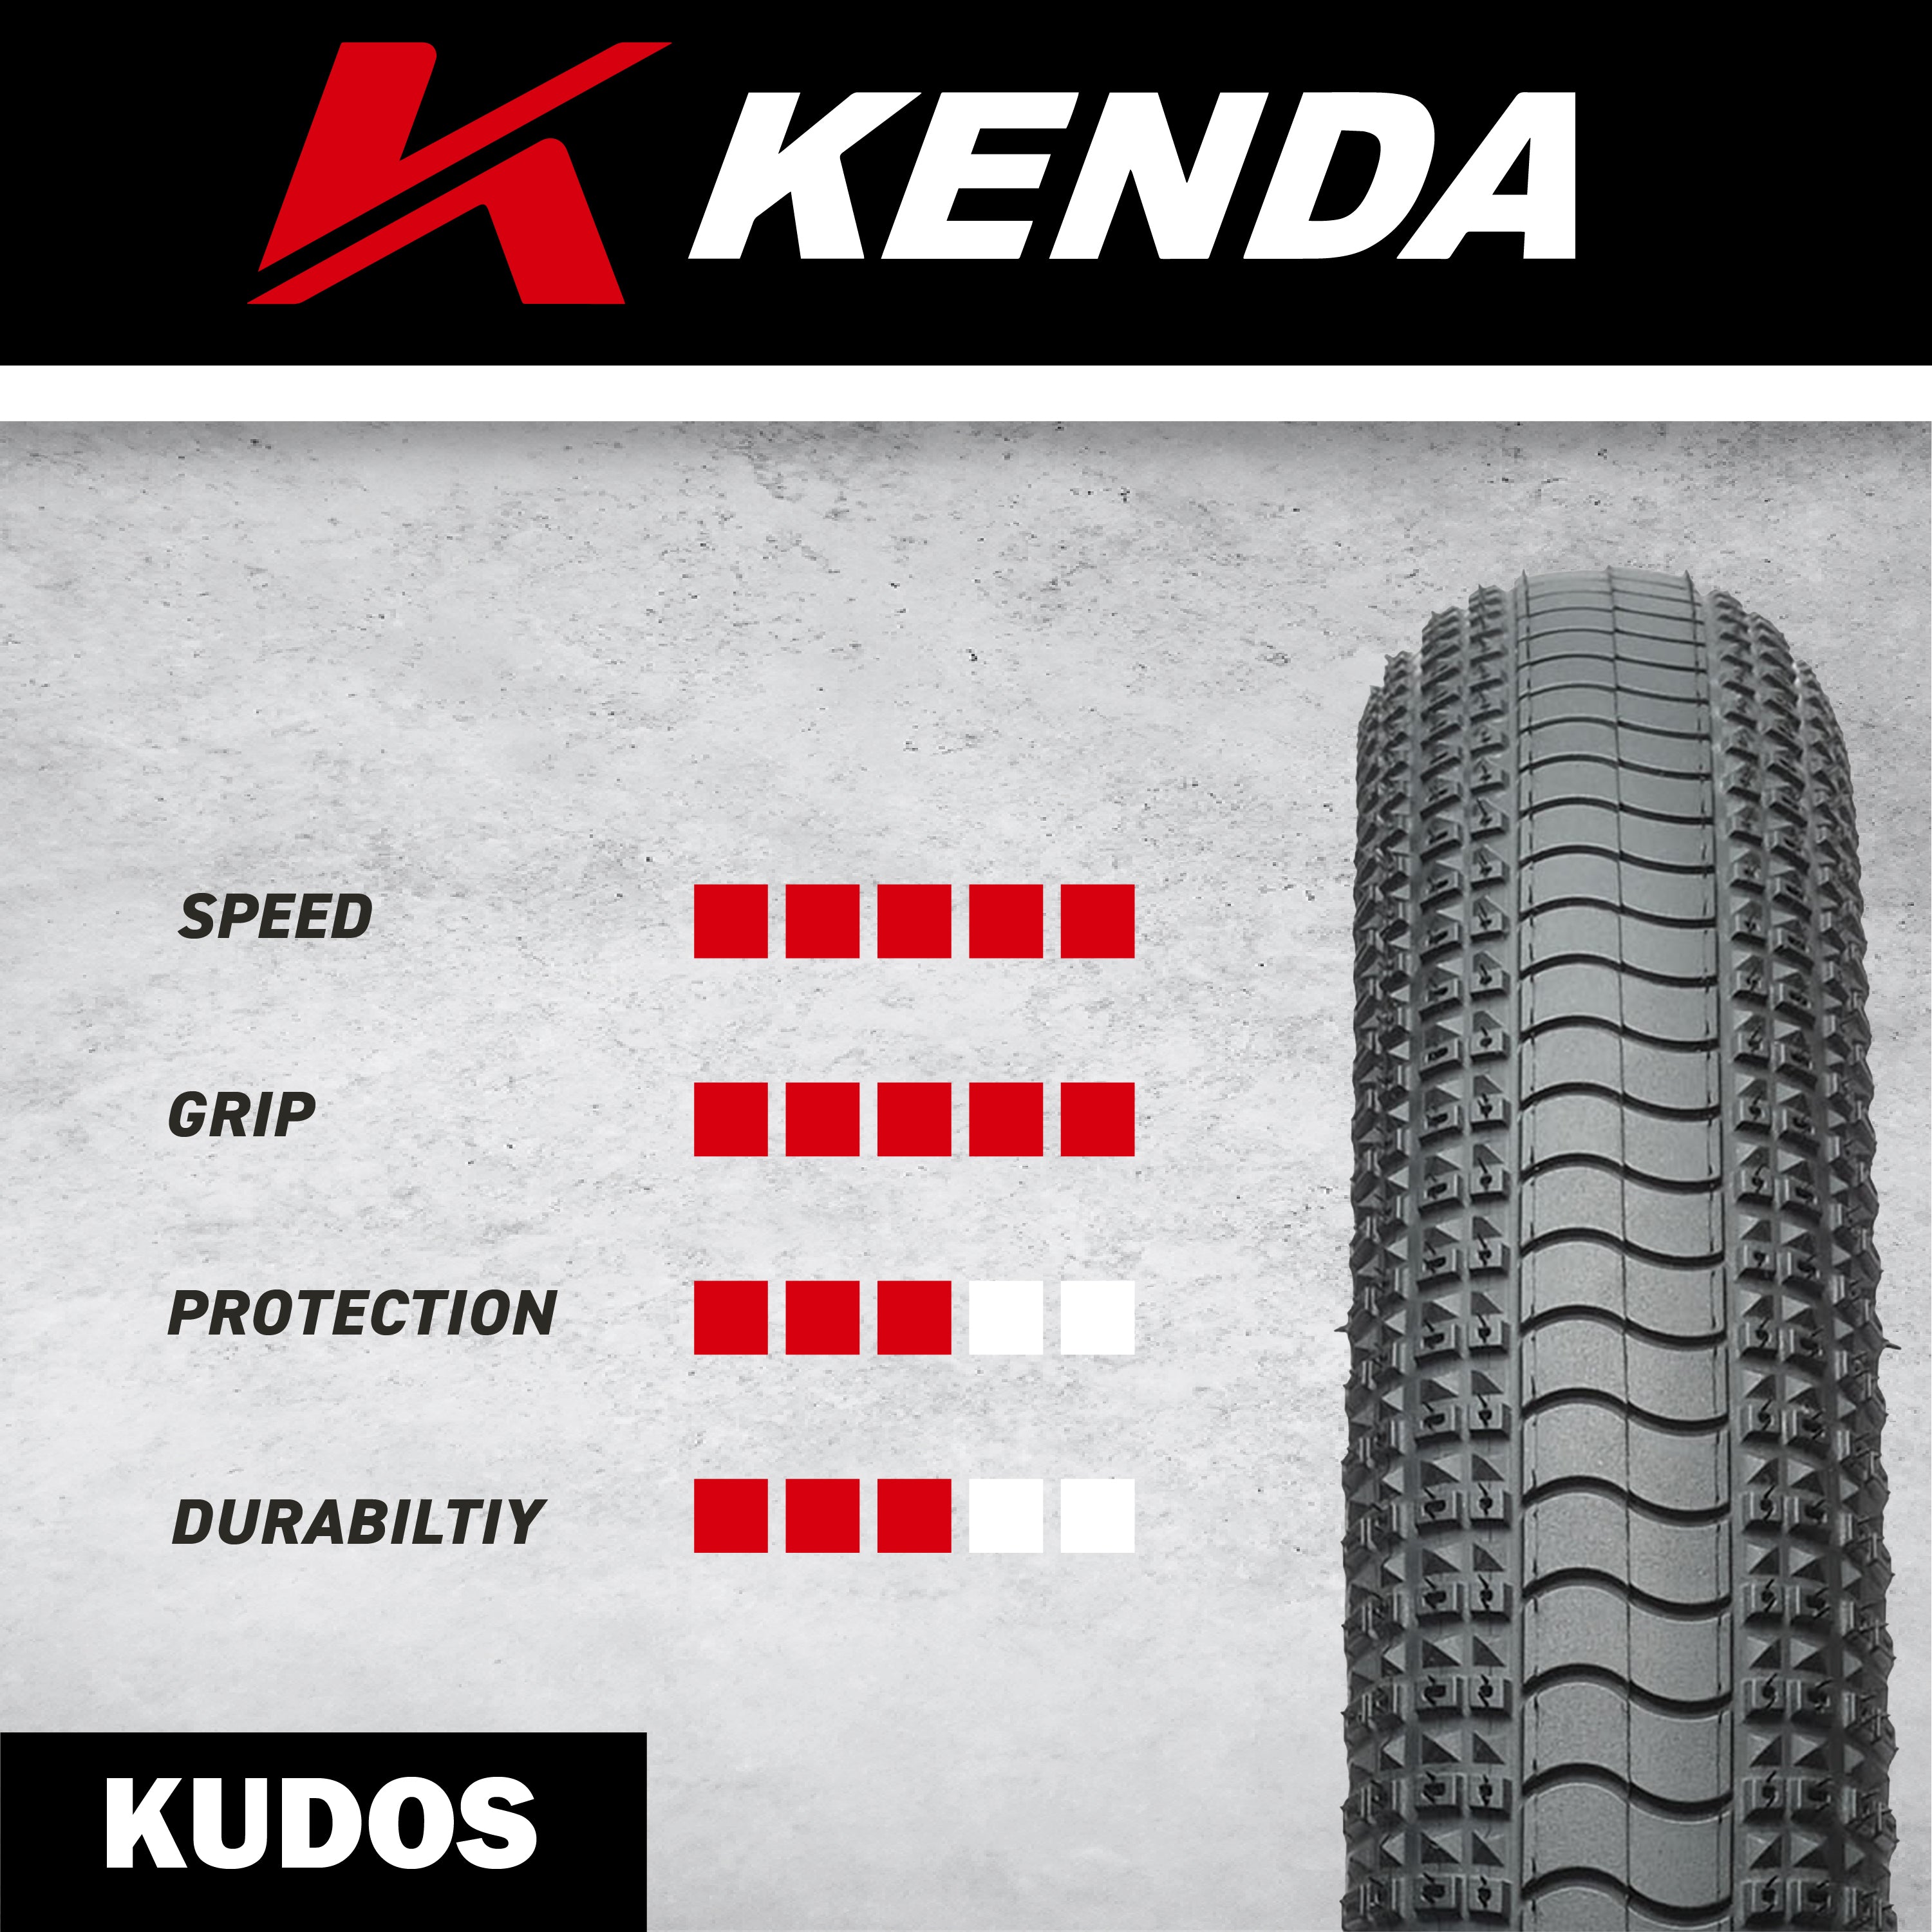 Kenda Kudos Pro 120tpi Fold 20x1.95 20x1.75 w/ Bottle Opener (Two Pack)